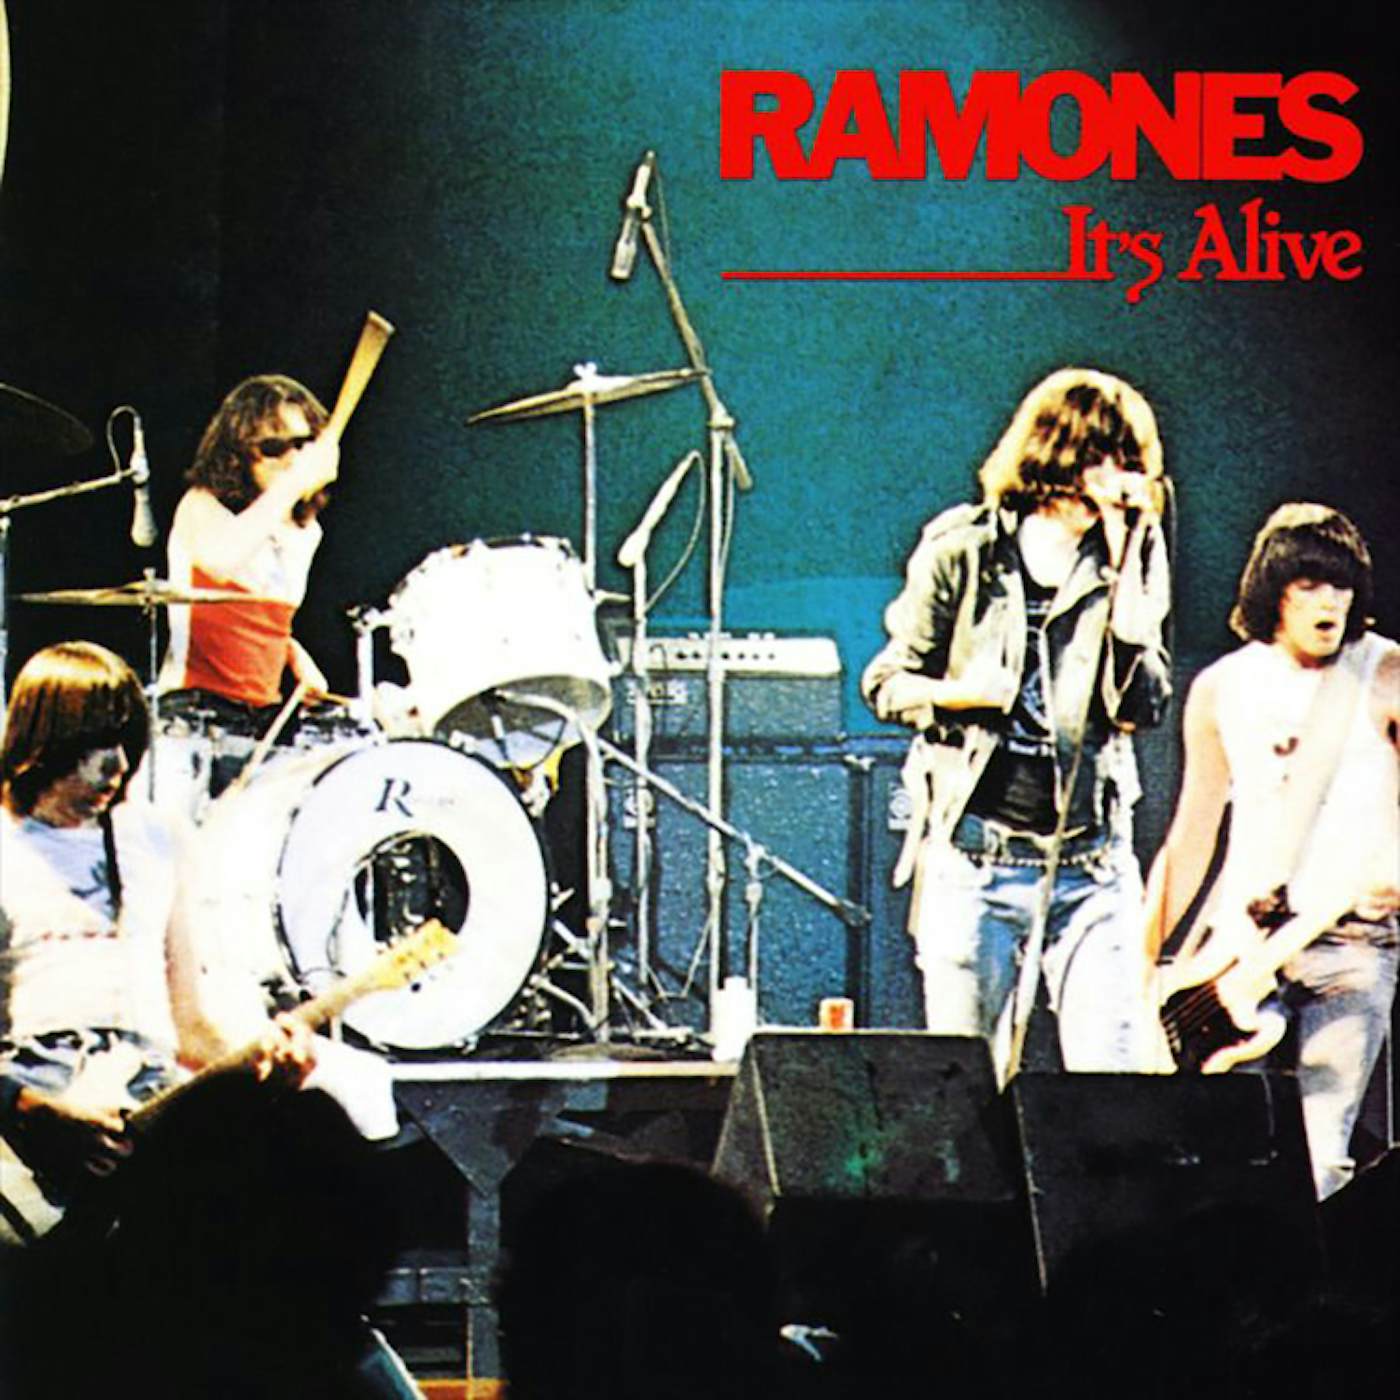 Ramones IT'S ALIVE (2019 REMASTER) Vinyl Record